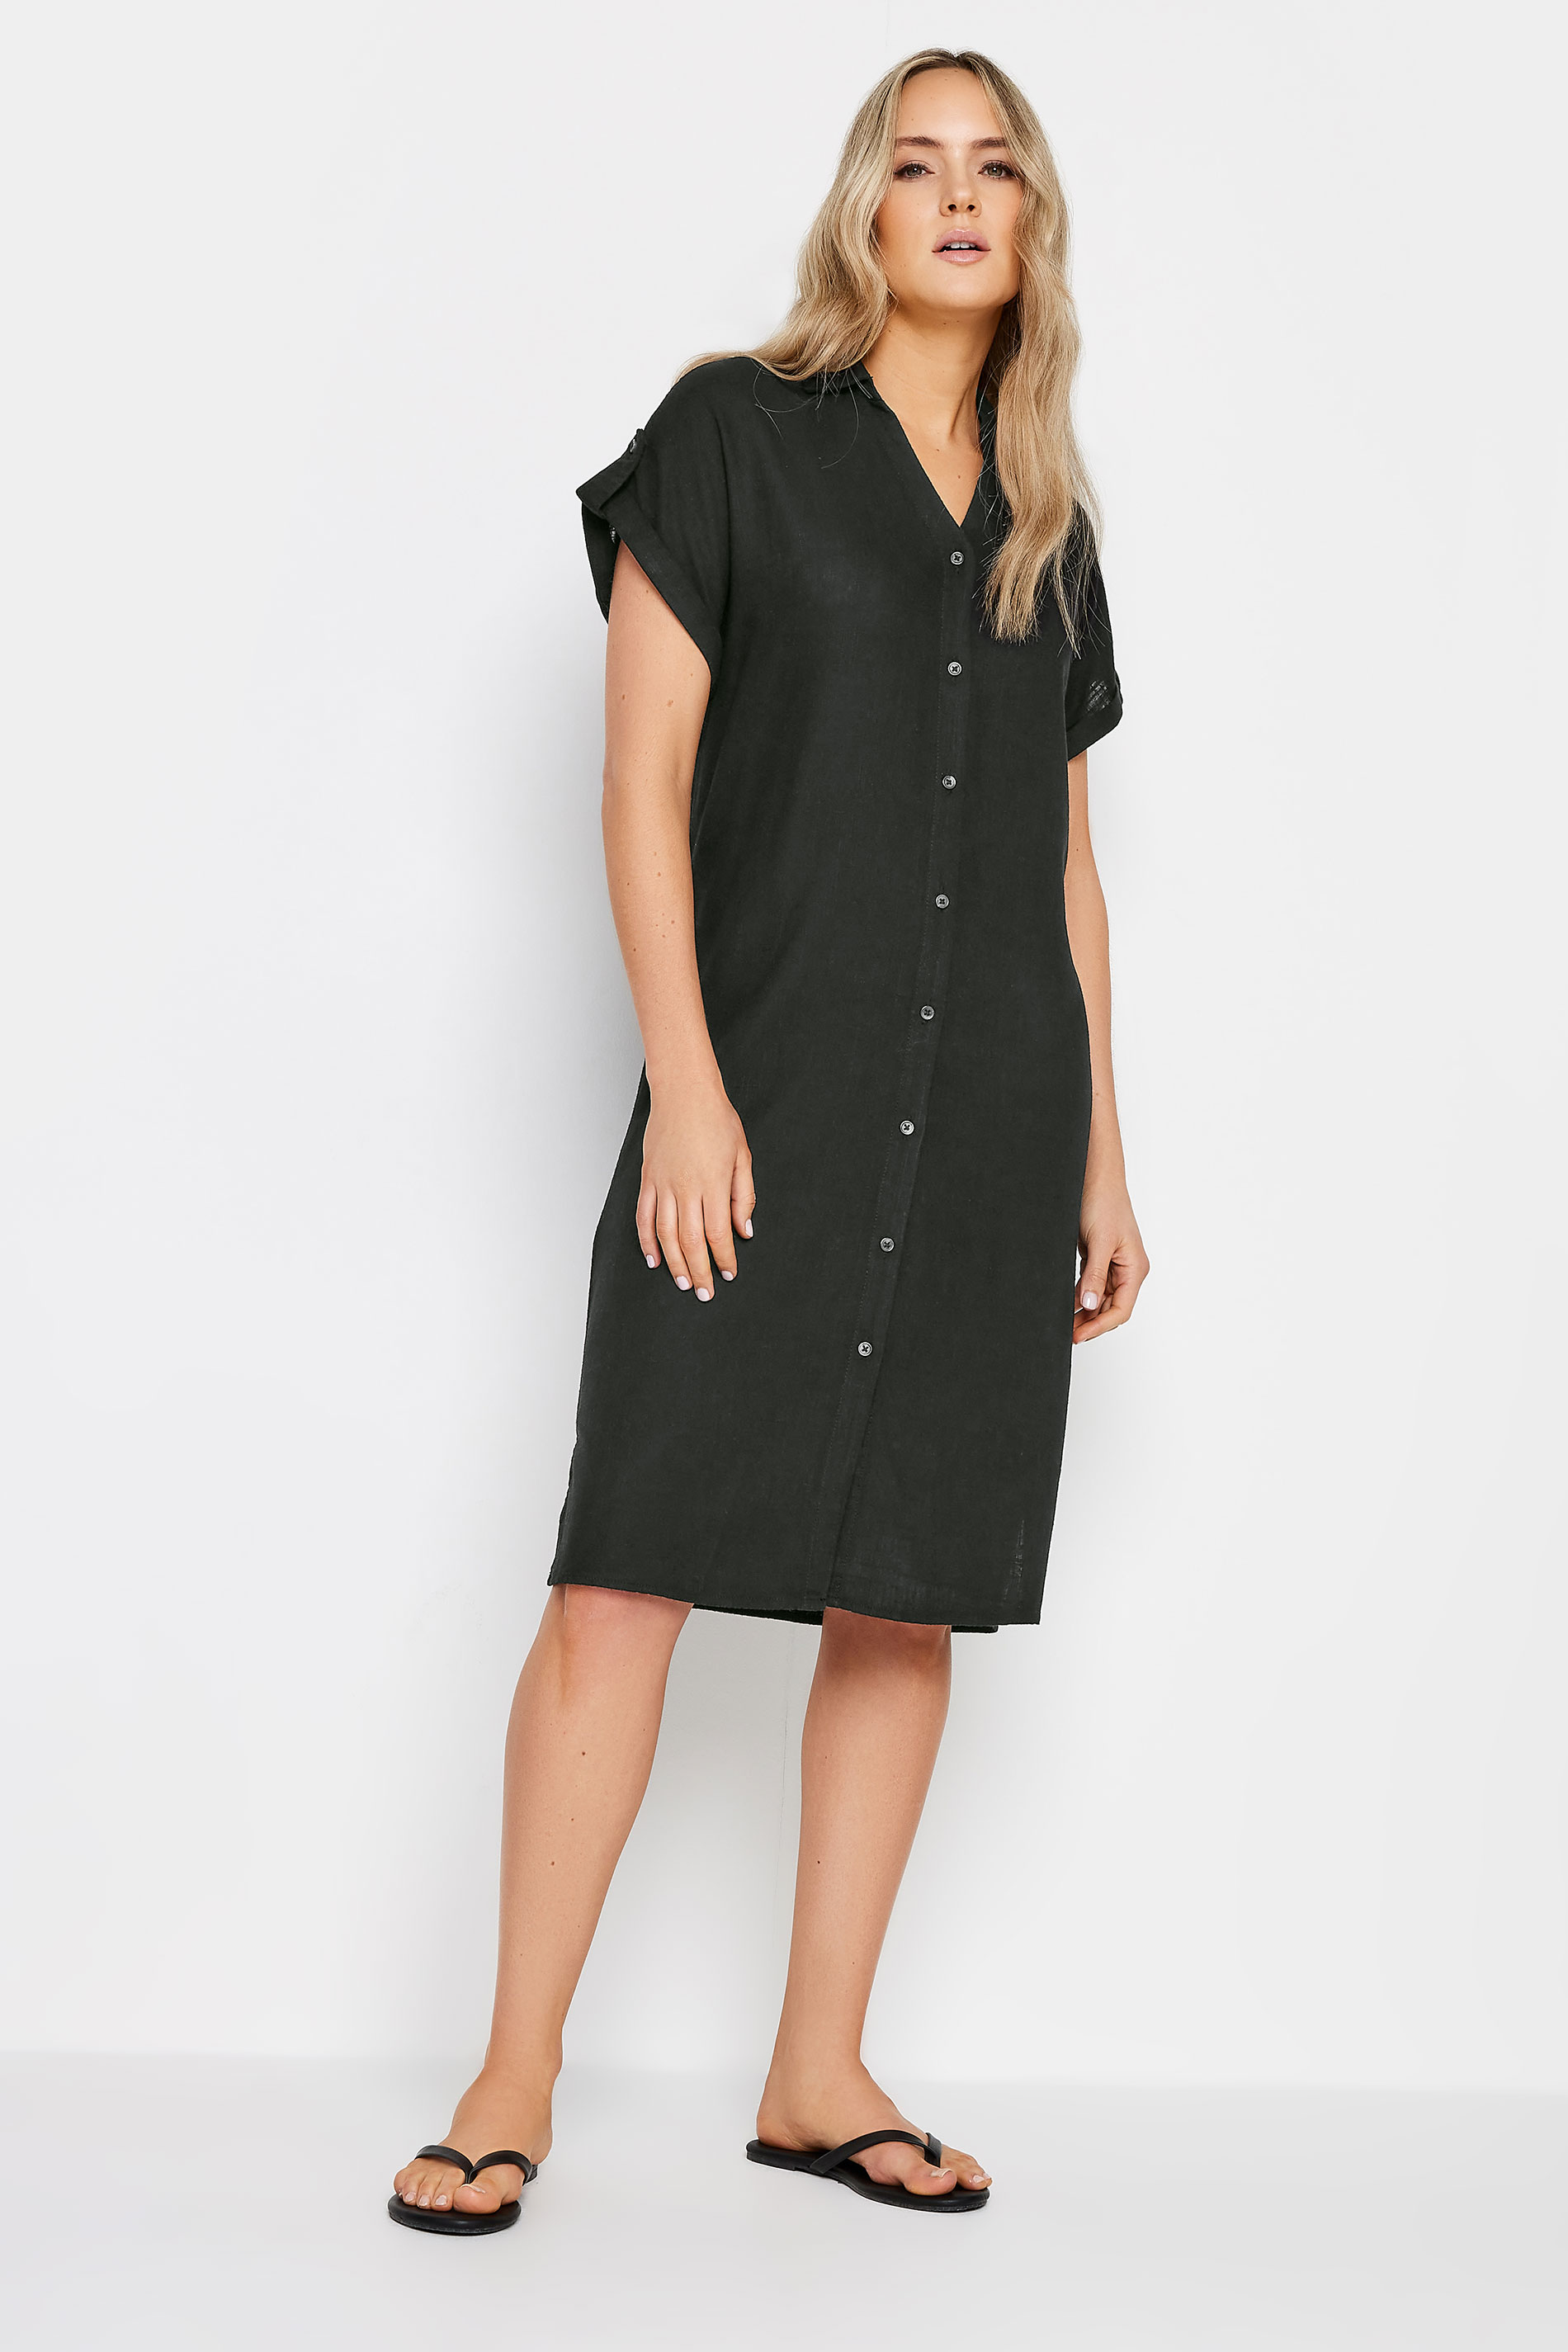 Lts Tall Black Linen Button Through Shirt Dress 24 Lts | Tall Women's Shirt Dresses